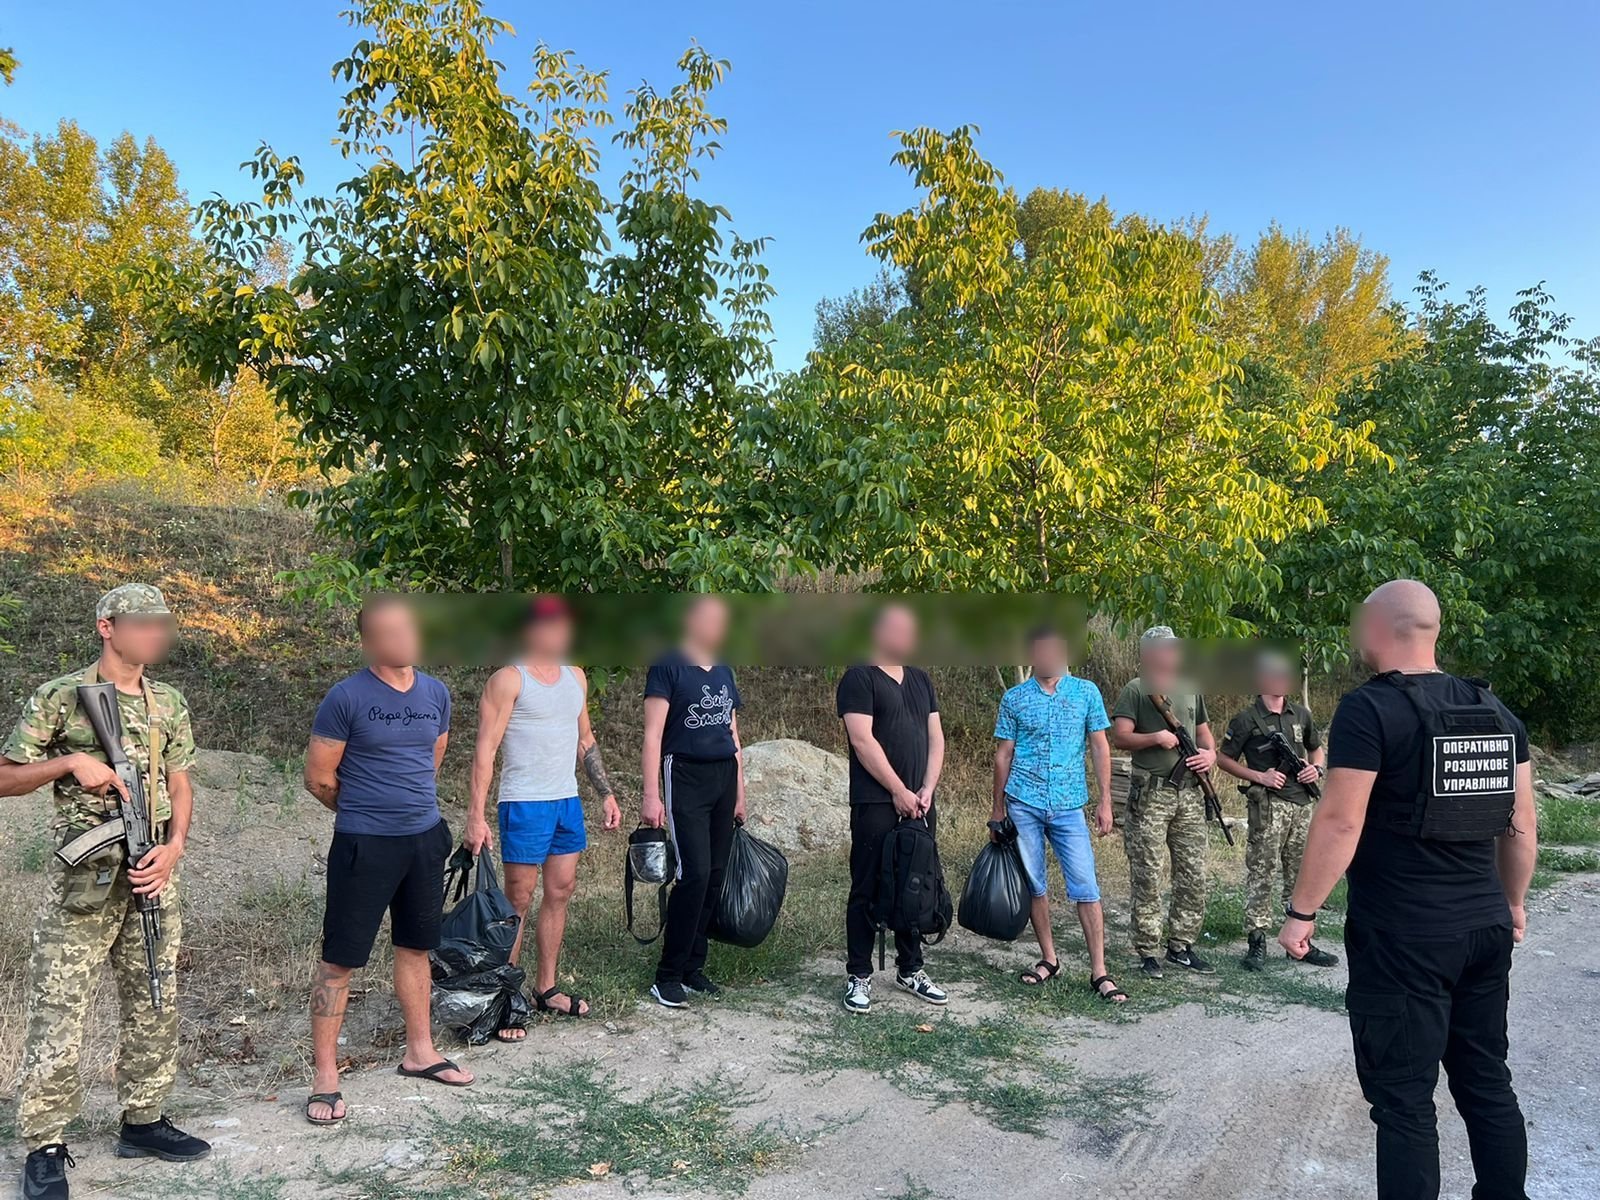 Військовослужбовці відділів «Вилок» і «Лужанка» затримали перевізника разом із чотирма чоловіками призовного віку поблизу українського кордону.